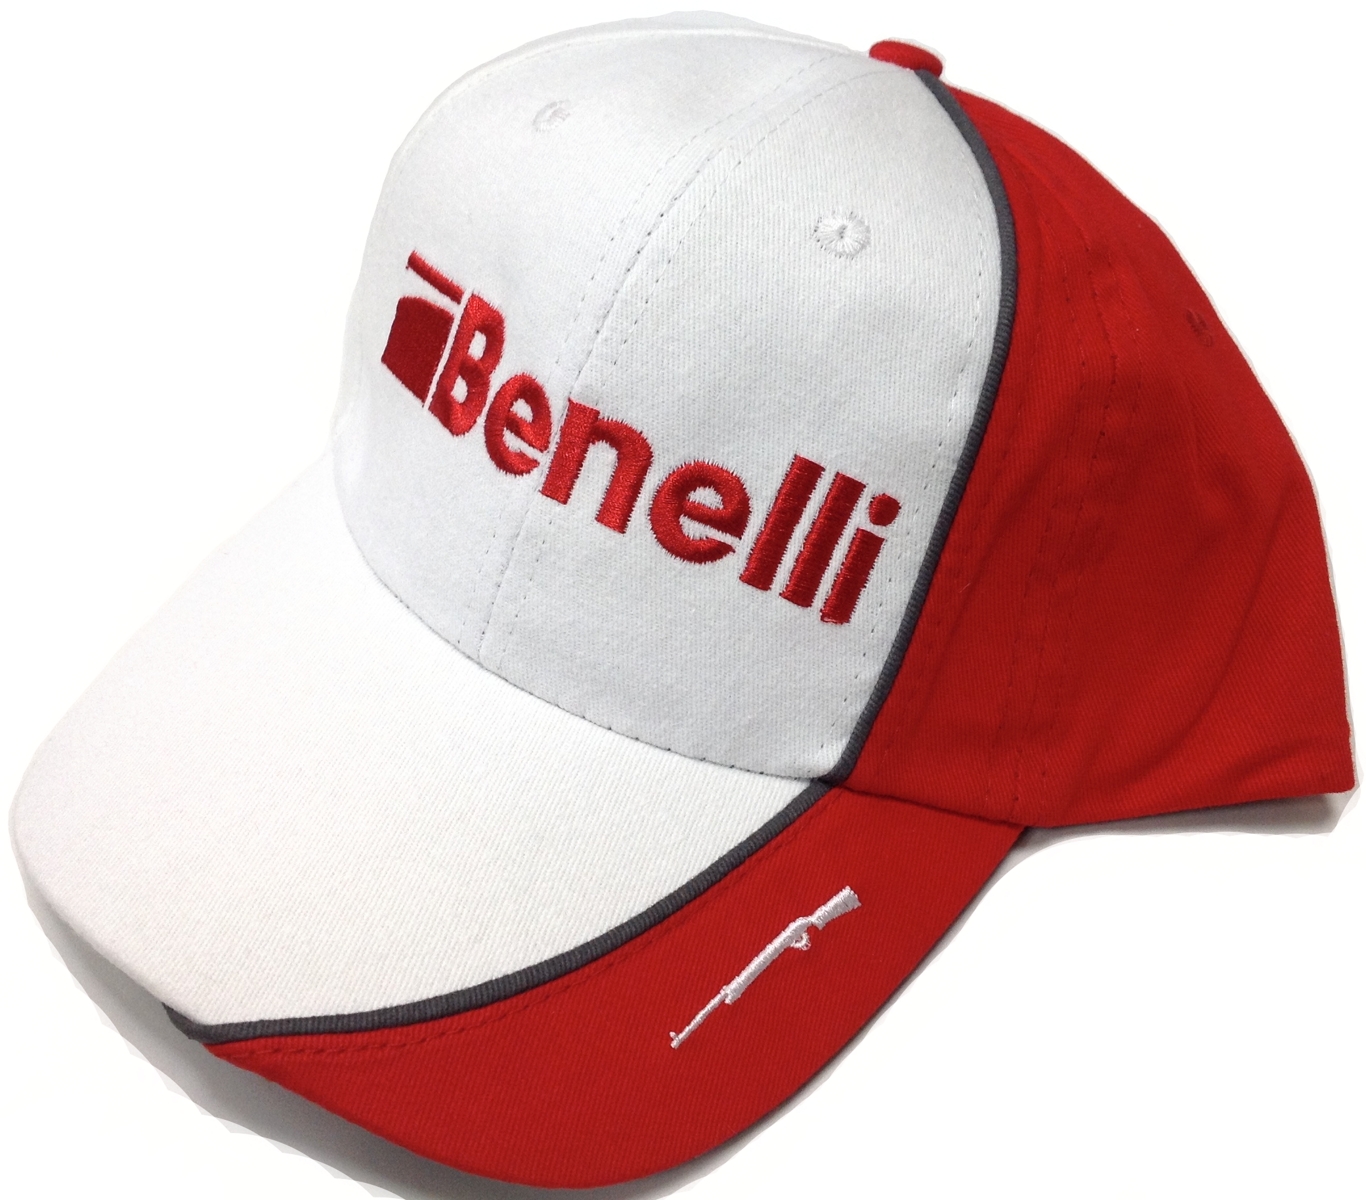 Benelli White & Red Cap